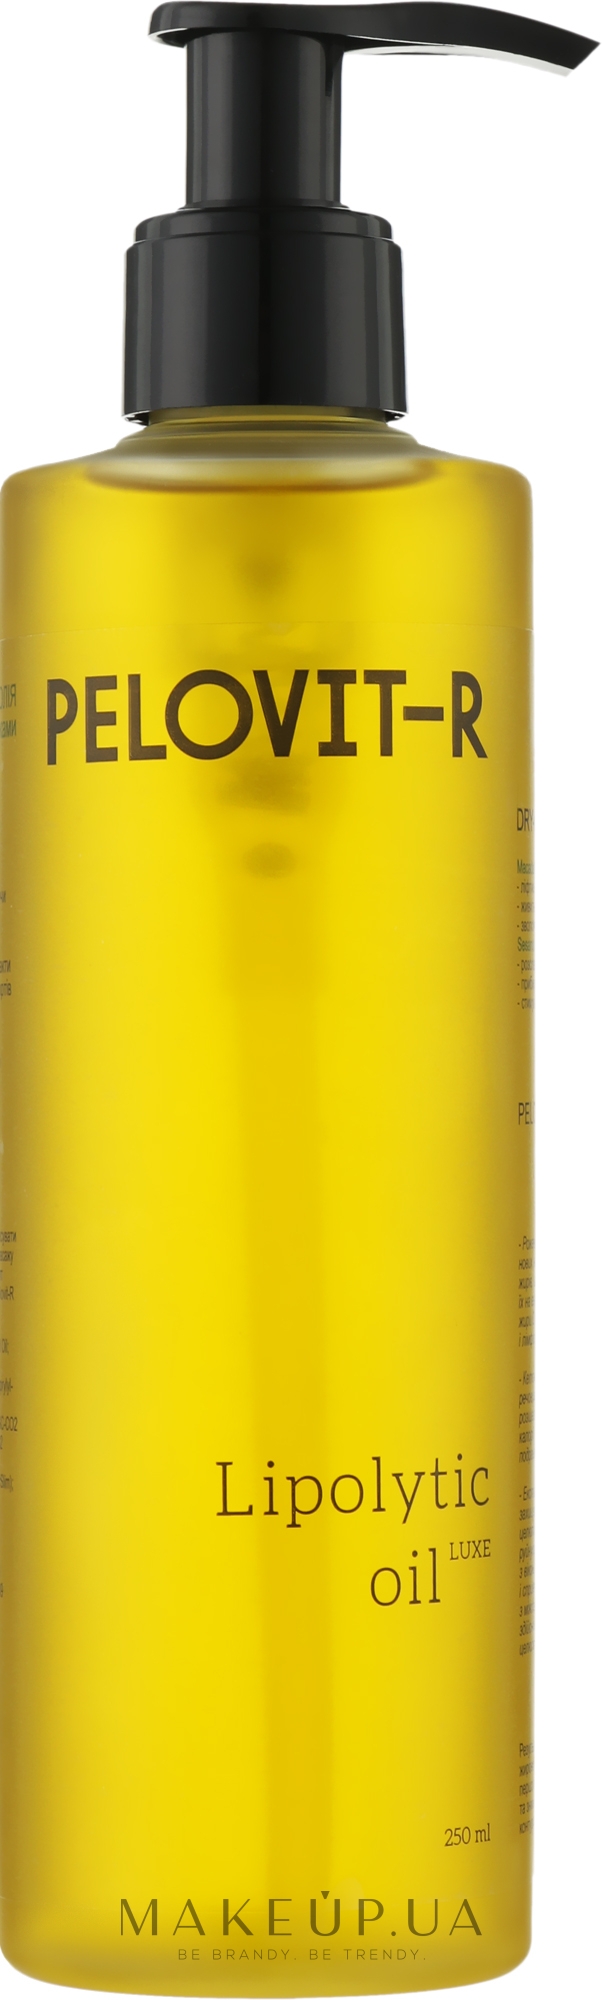 Суха масажна олія-ліполітик для тіла - Pelovit-R Lipolytic Oil Luxe — фото 250ml